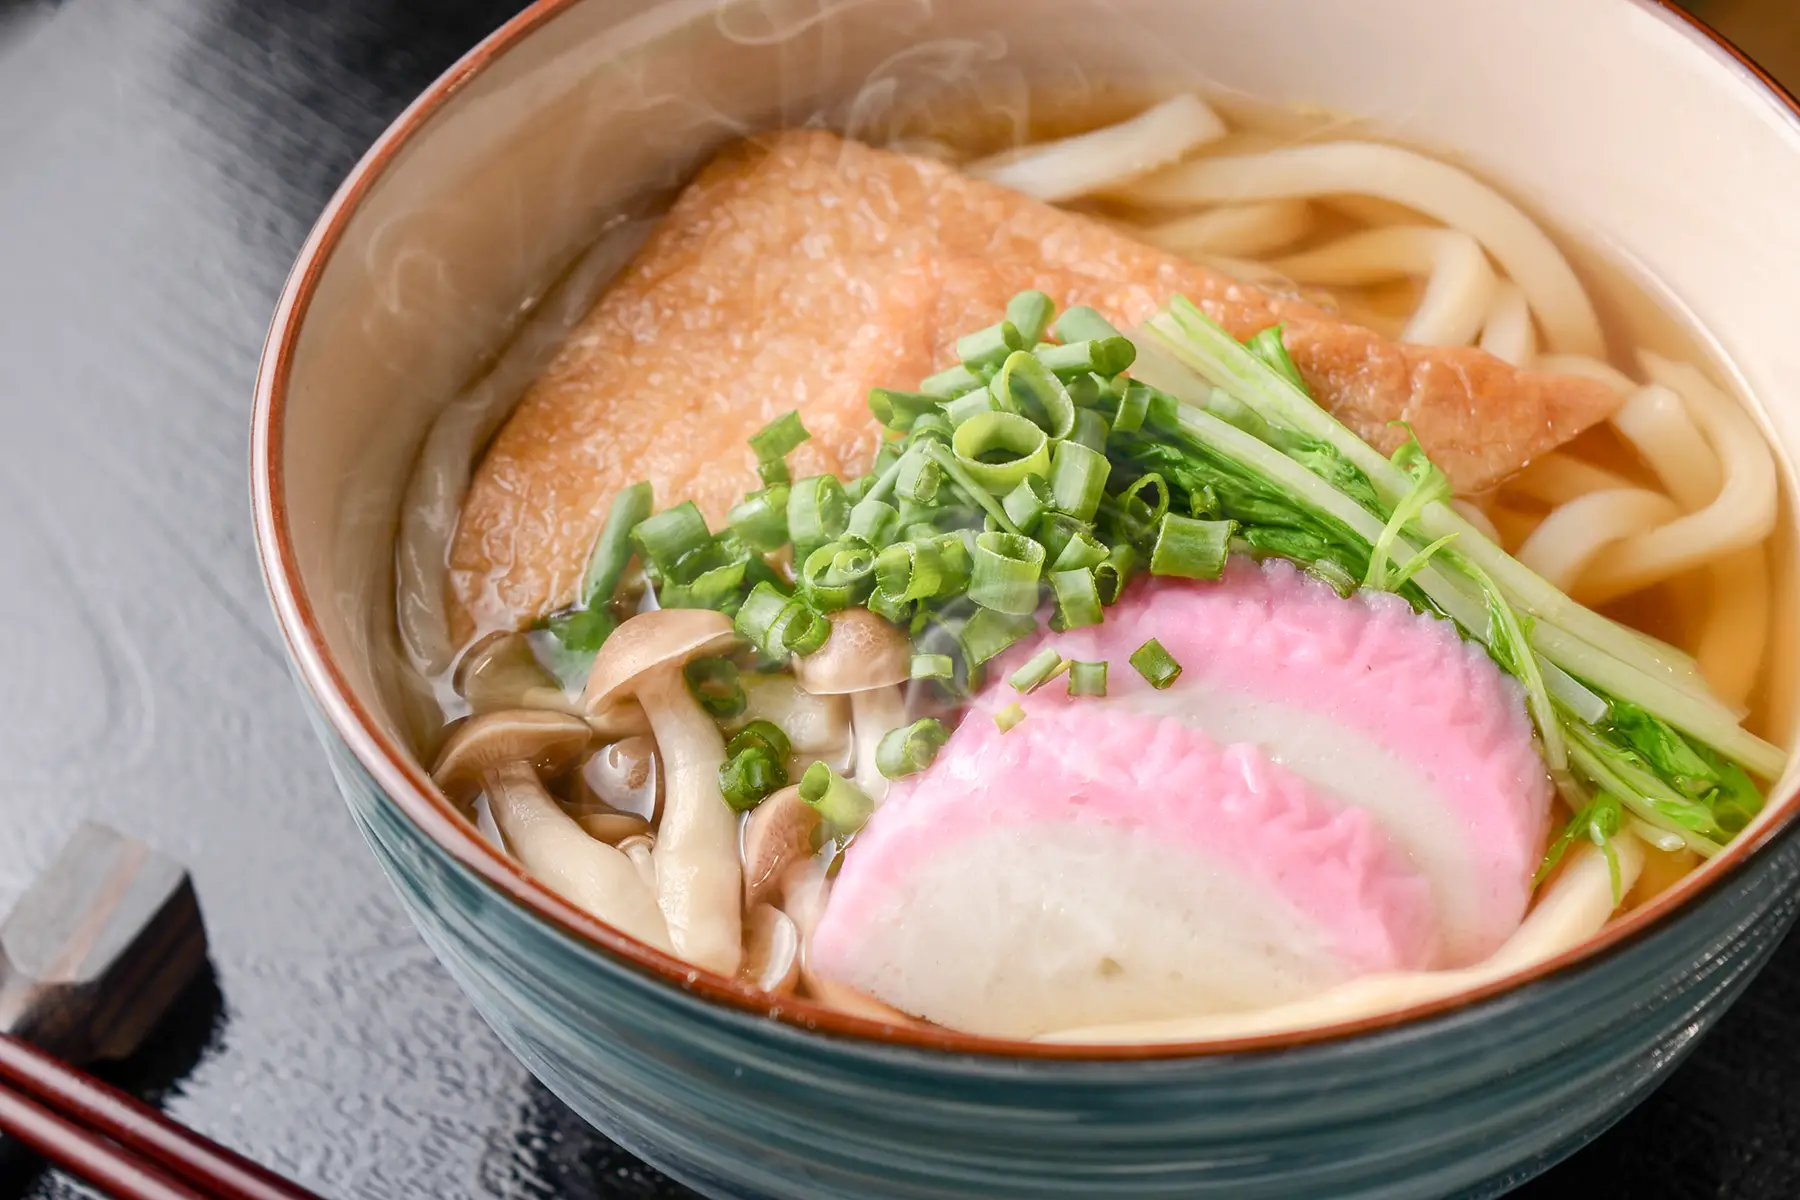 Kitsune udon: deep-fried tofu with udon noodles, scallions, fishcakes, and mushrooms